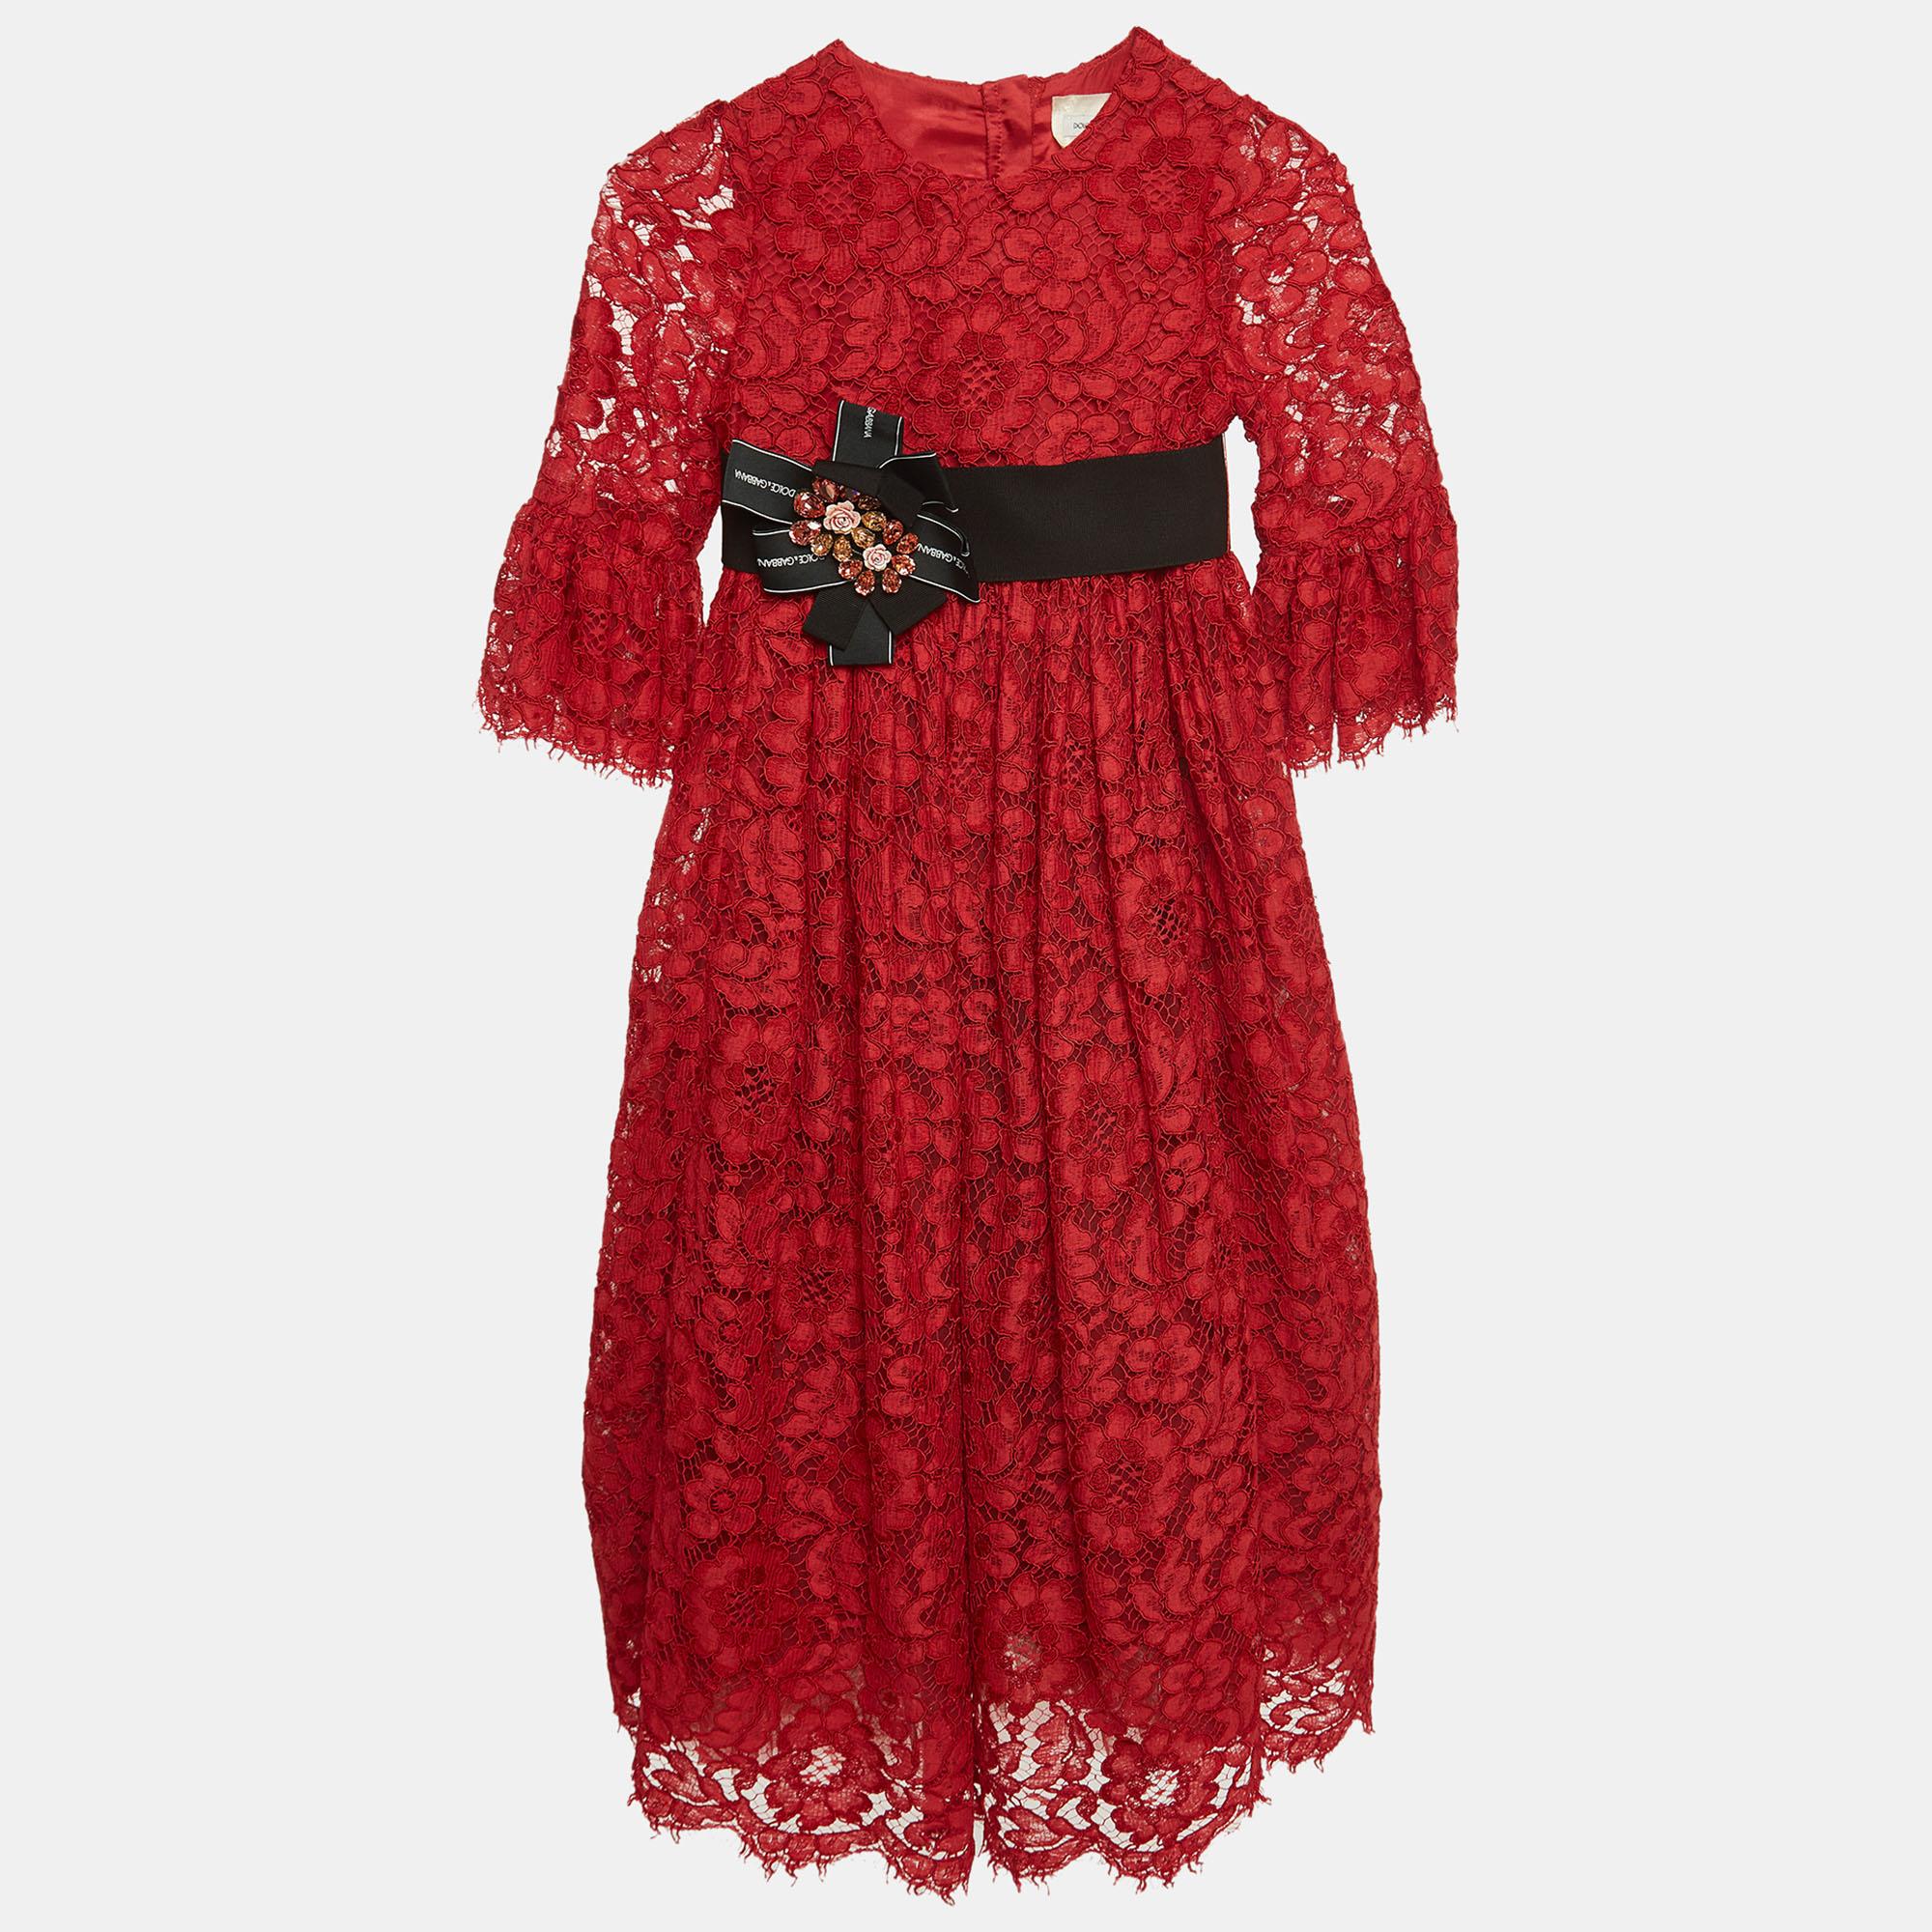 Mit diesem roten Kleid von Dolce & Gabbana in limitierter Auflage wird der Stil Ihrer Kleinen aufgewertet. Das sorgfältig gefertigte Kleidungsstück ist langlebig und bequem und hat ein hübsches Spitzendesign, das perfekt für alle Jahreszeiten ist.